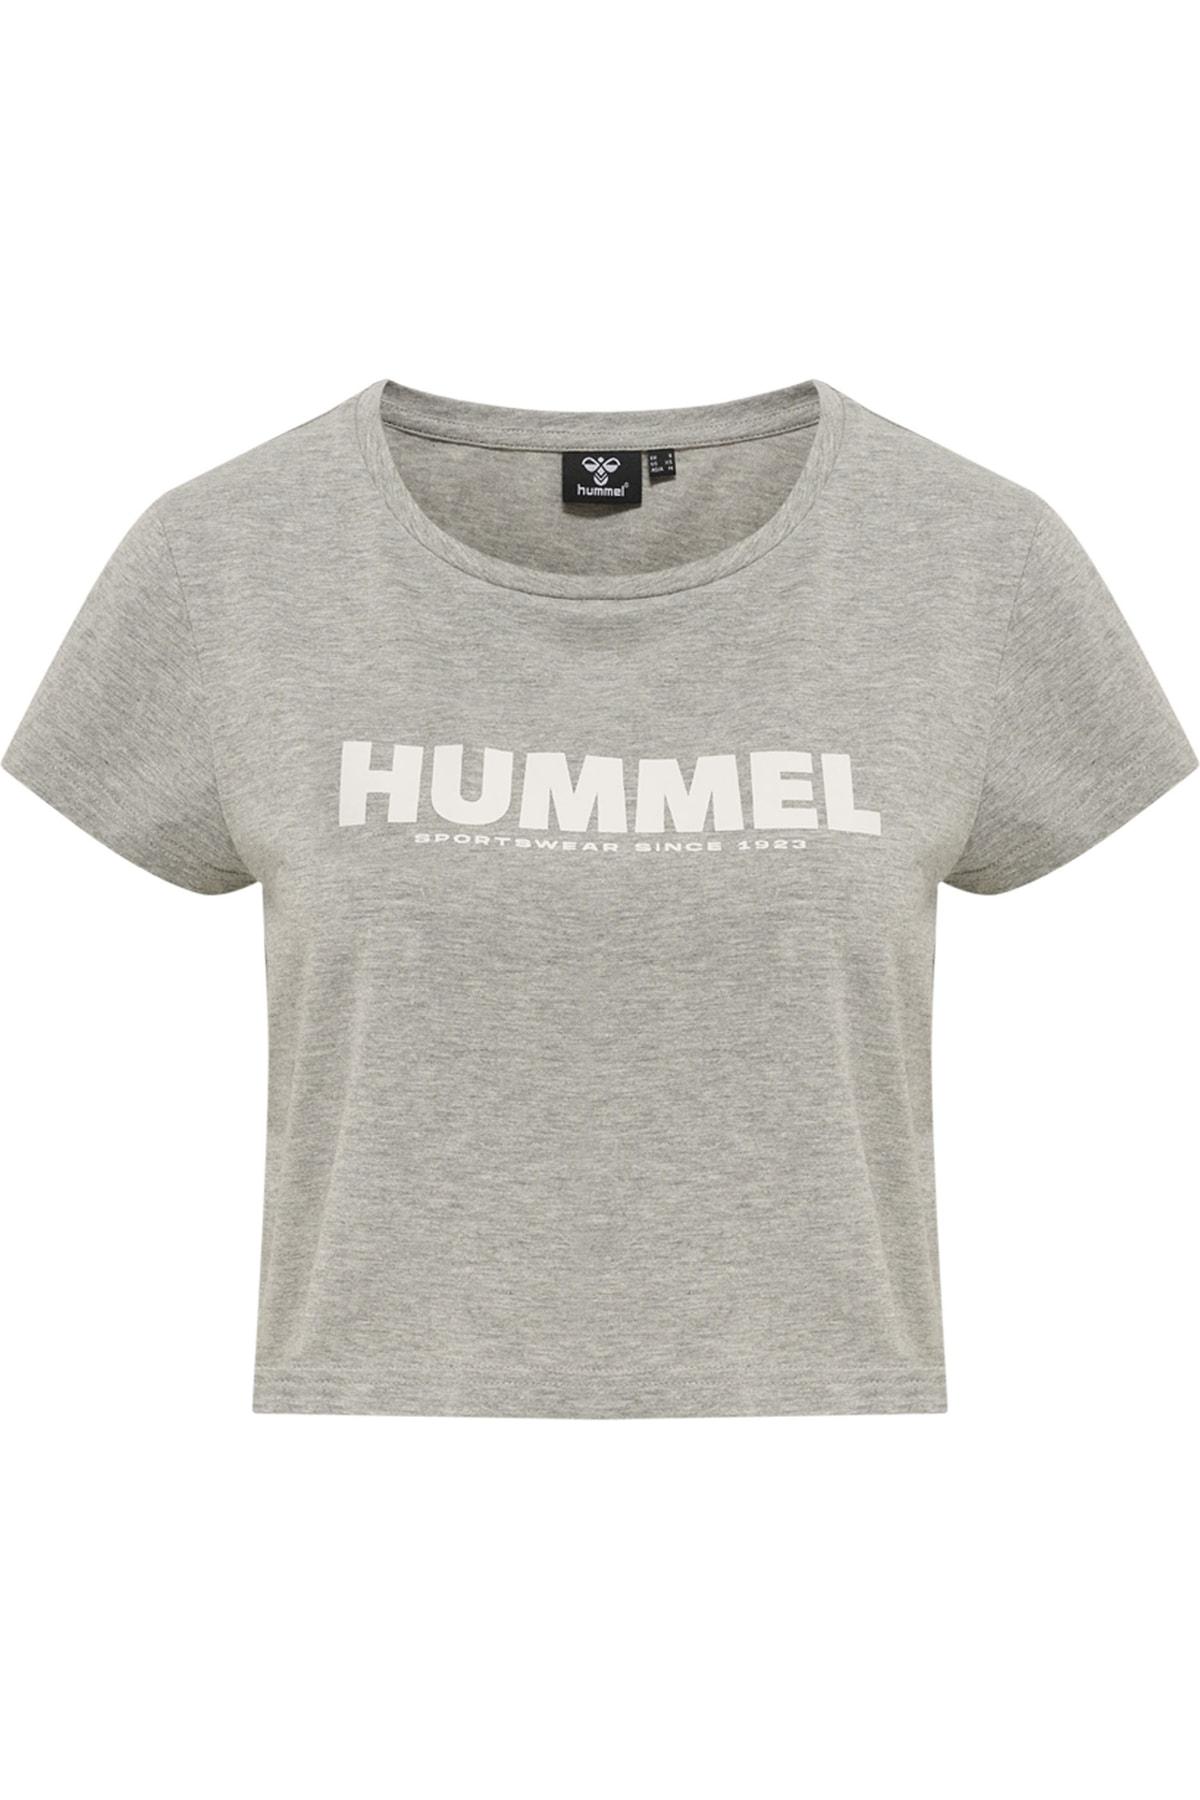 HUMMEL T-Shirt Grau Relaxed Fit